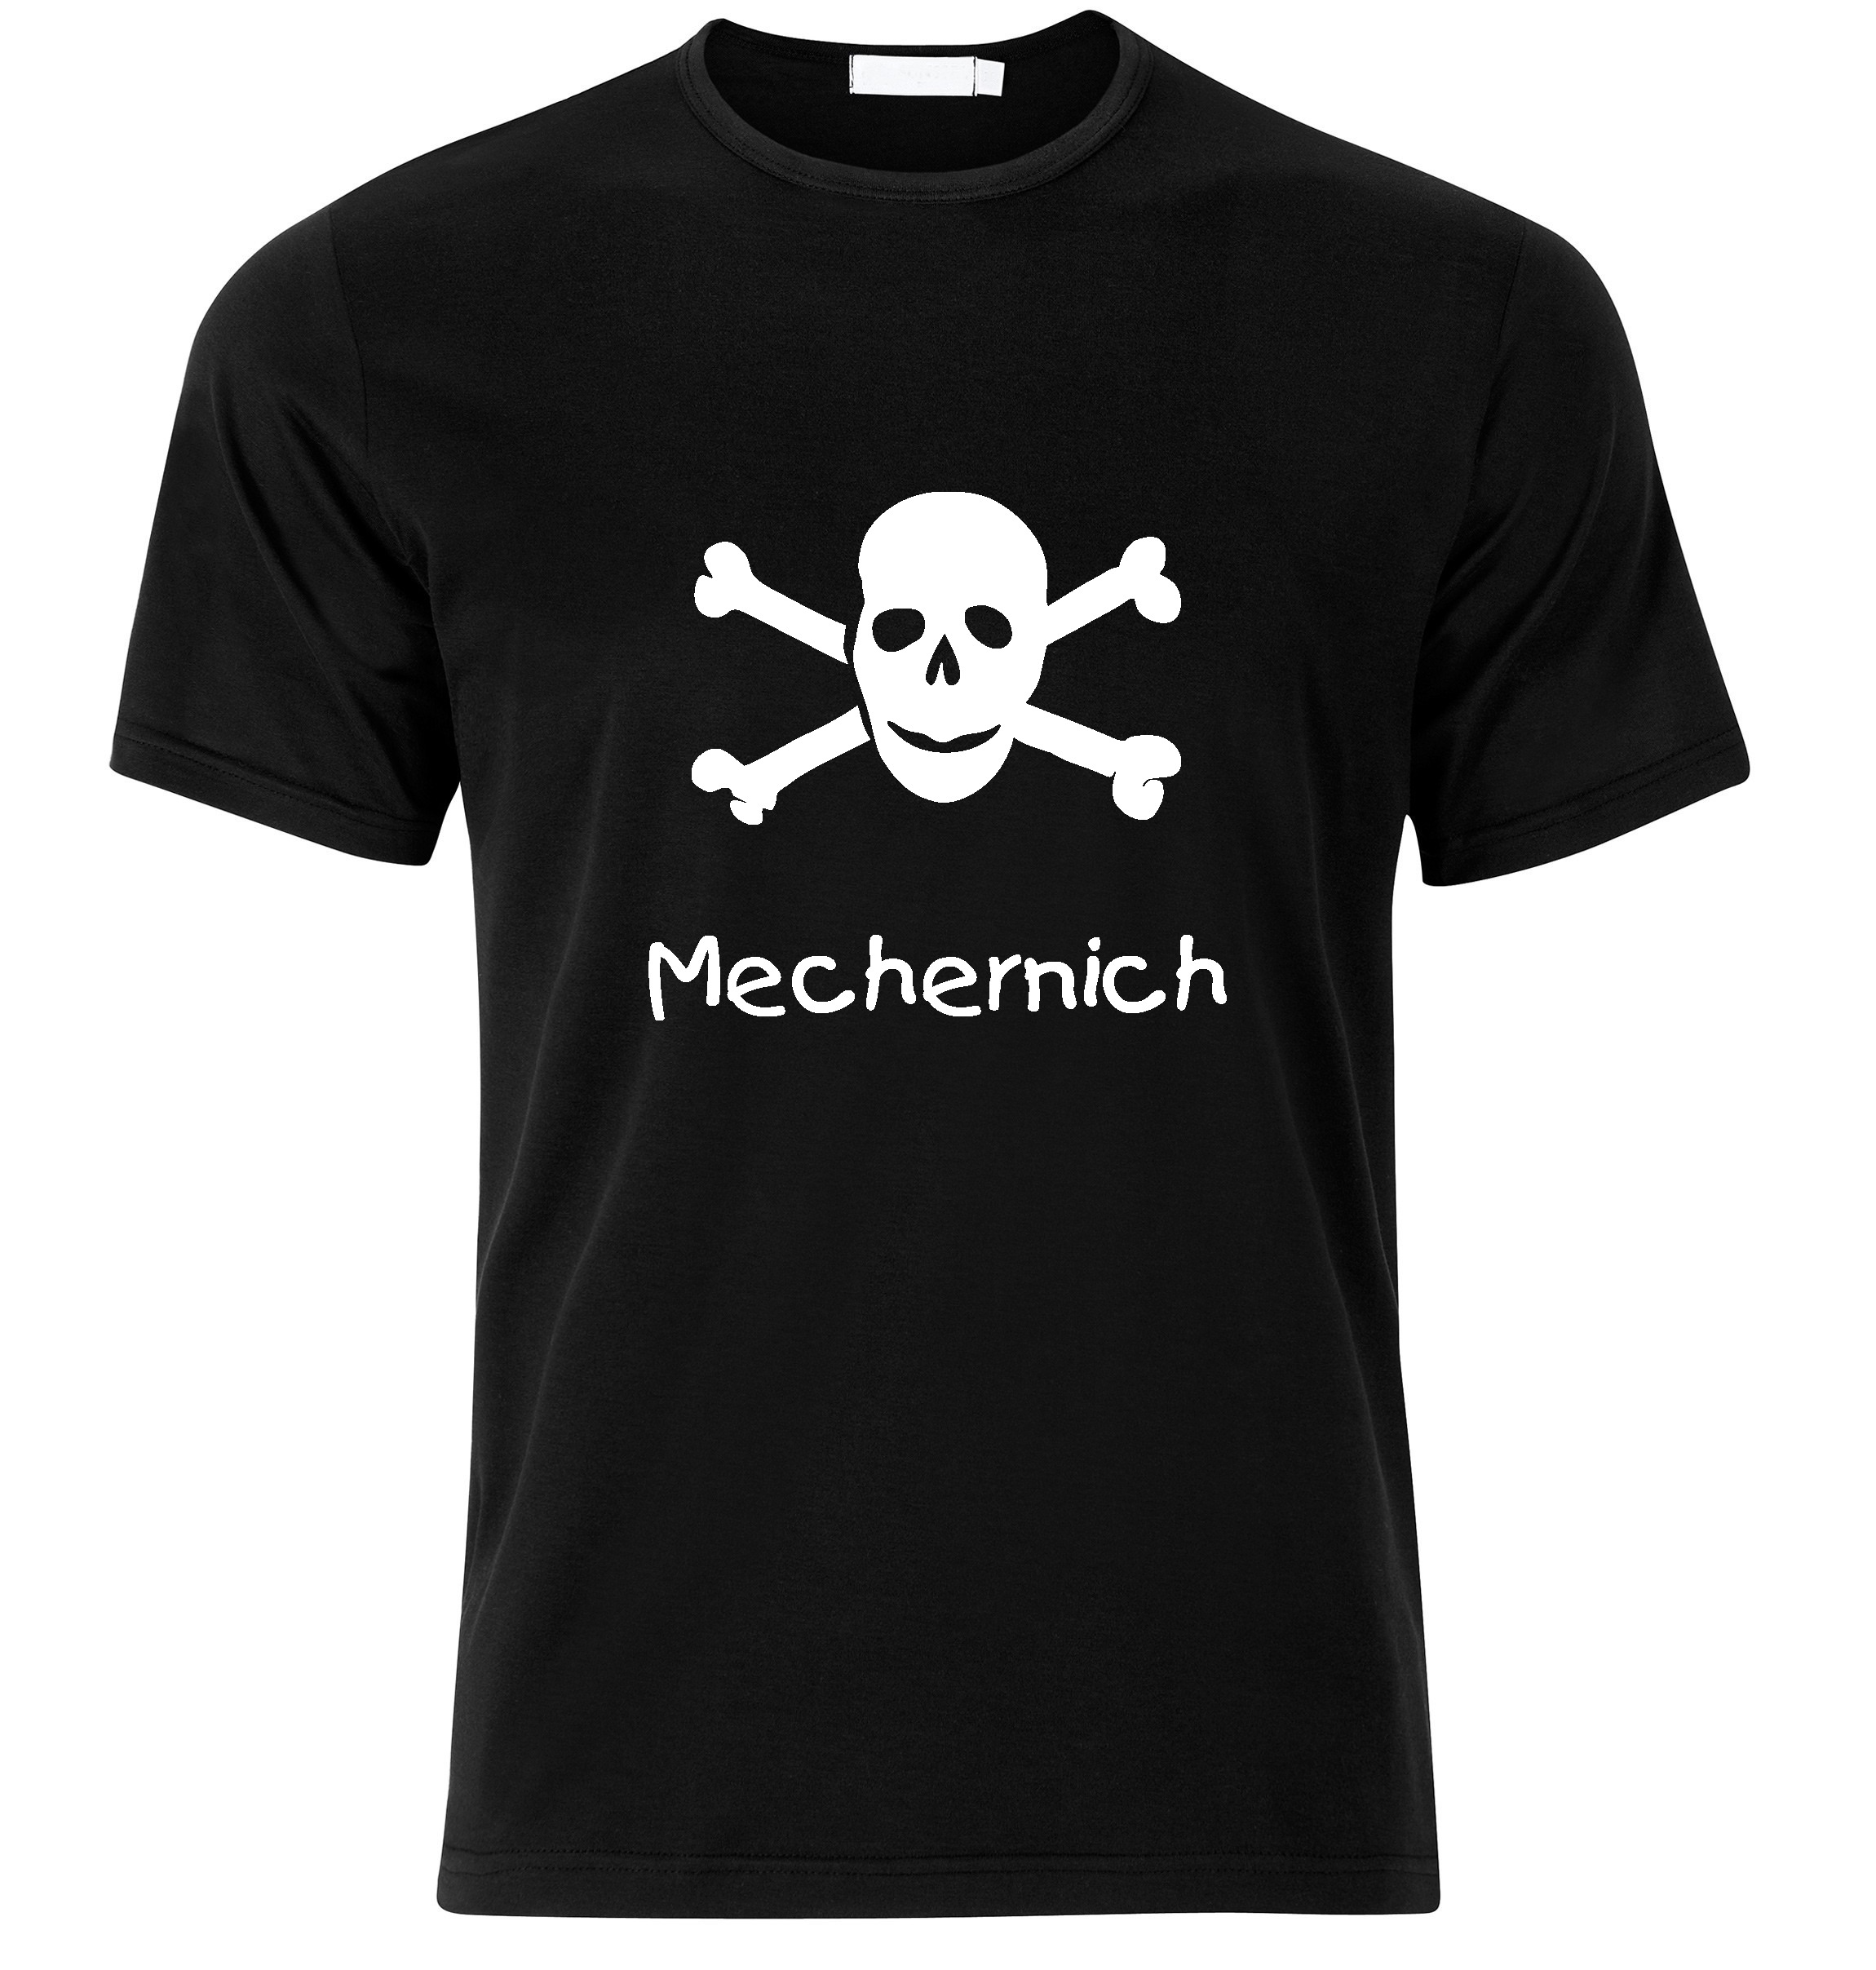 T-Shirt Mechernich Jolly Roger, Totenkopf